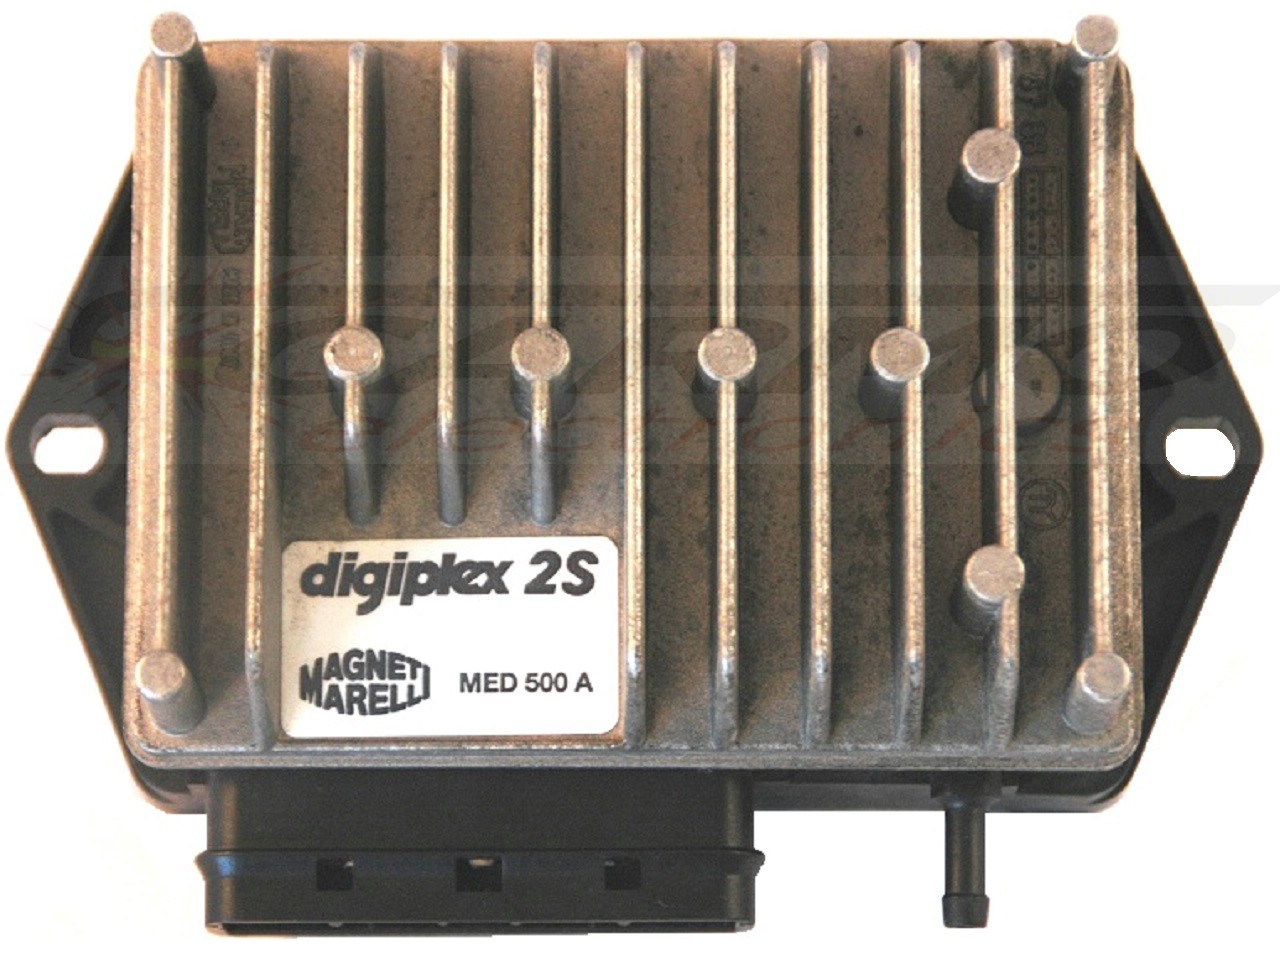 Ducati Moto Guzzi Digiplex 2S CDIユニットECUイグナイター MED441A, MED442A, MED446A, MED500A, MED501A, MED902A - 画像をクリックして閉じる